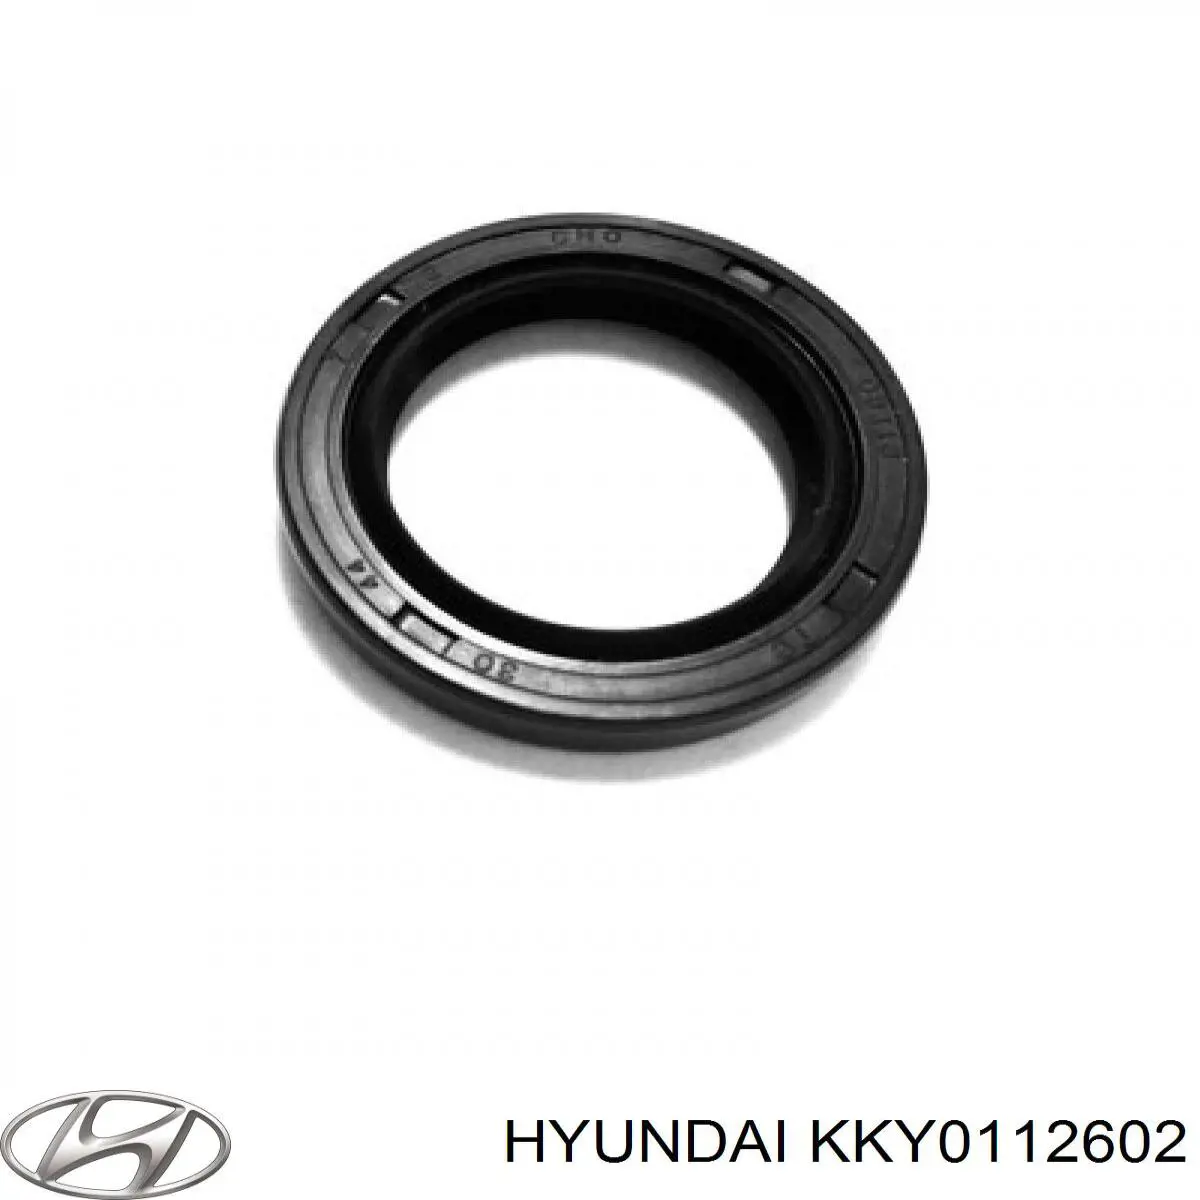 KKY0112602 Hyundai/Kia anillo retén, árbol de levas